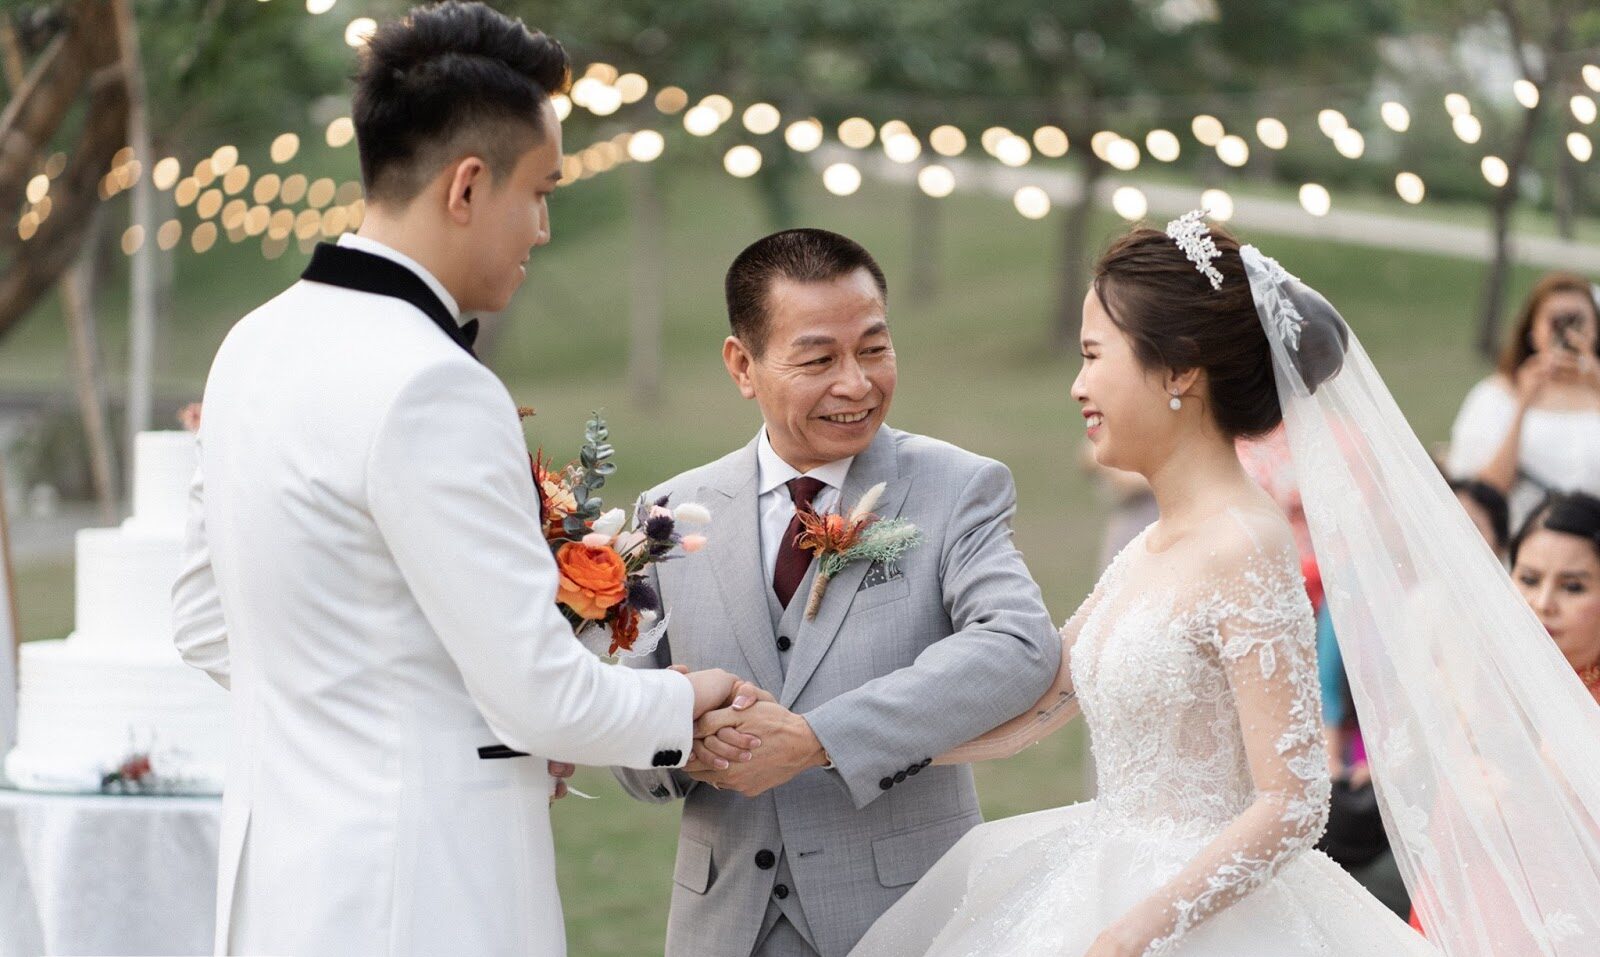 Nghi thức trao tay cô dâu cho chú rể trong lễ cưới là một khoảnh khắc đầy ý nghĩa